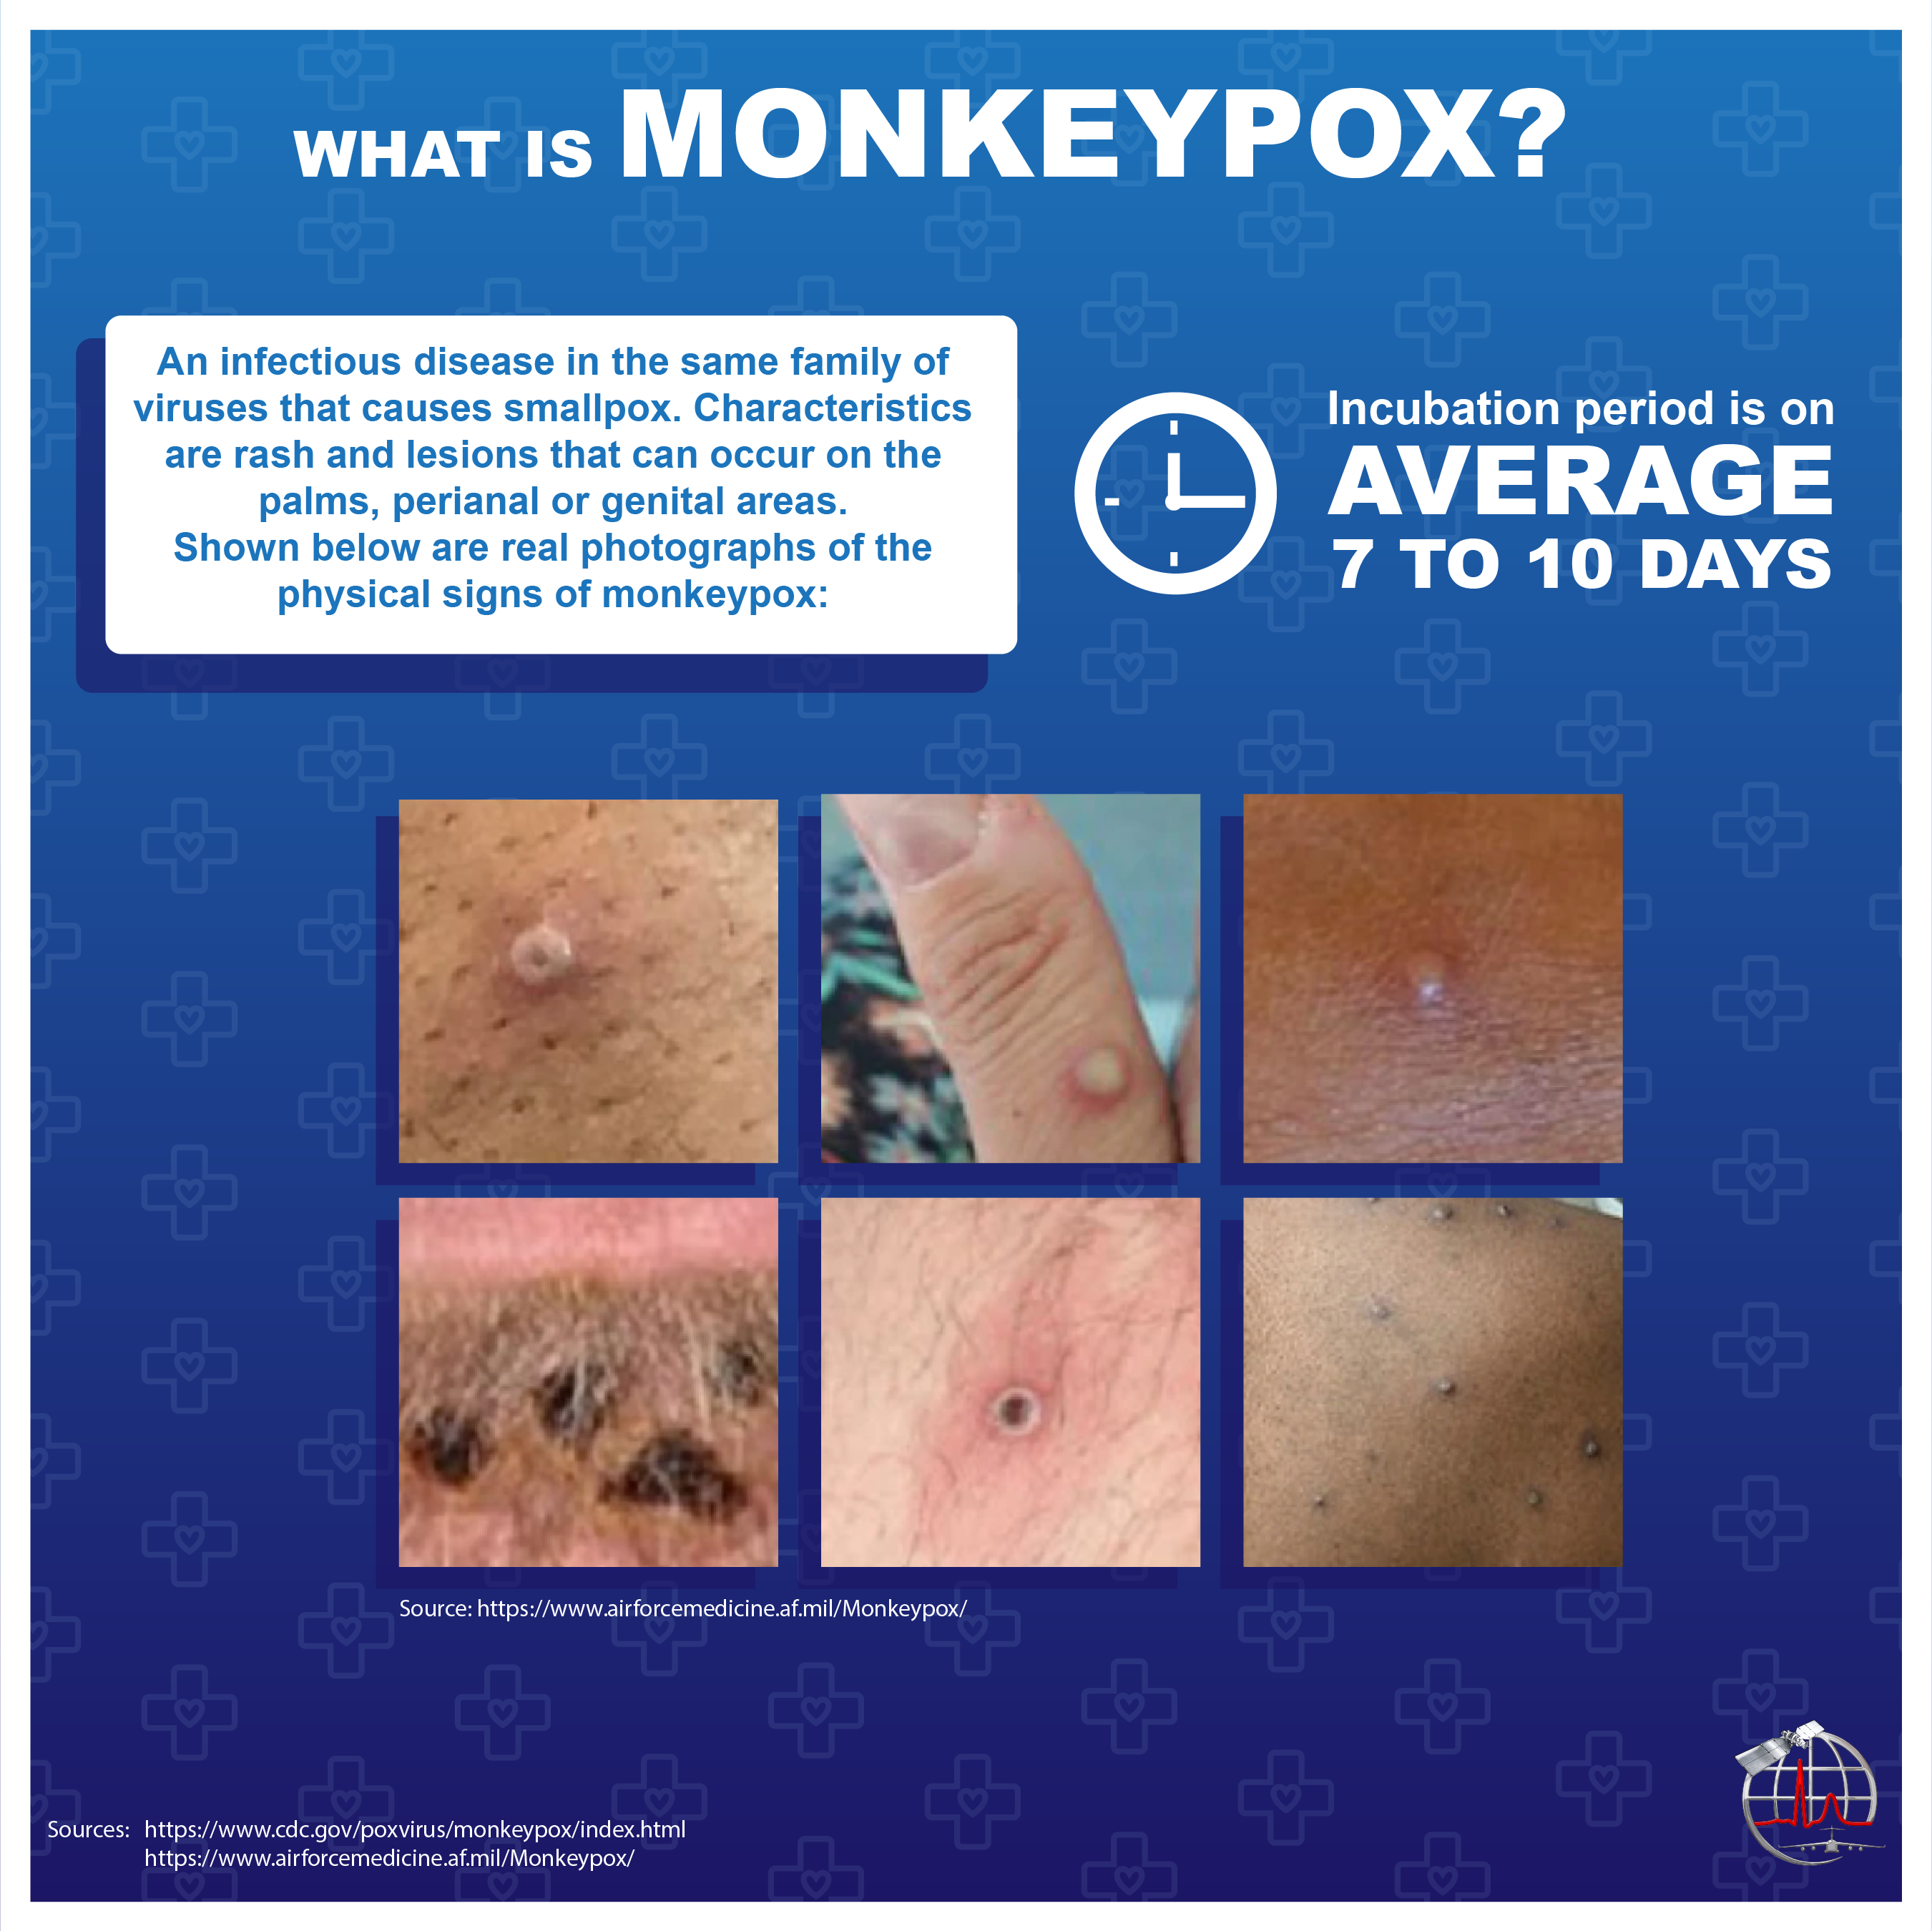 Image of monkeypox graphic